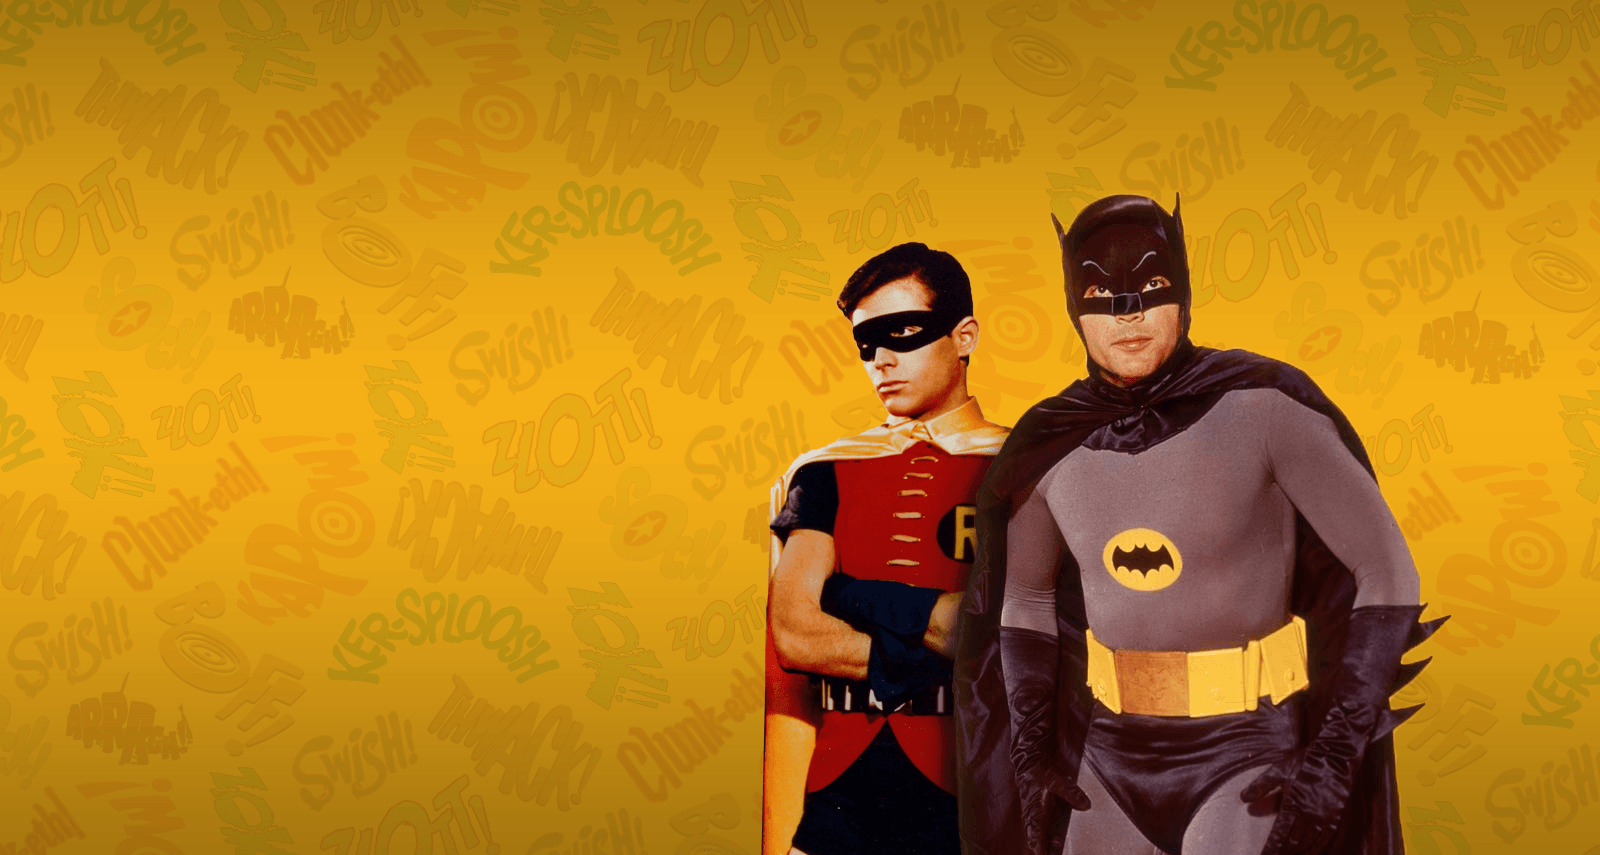 Batman Wallpaper. Batman wallpaper, Action tv shows